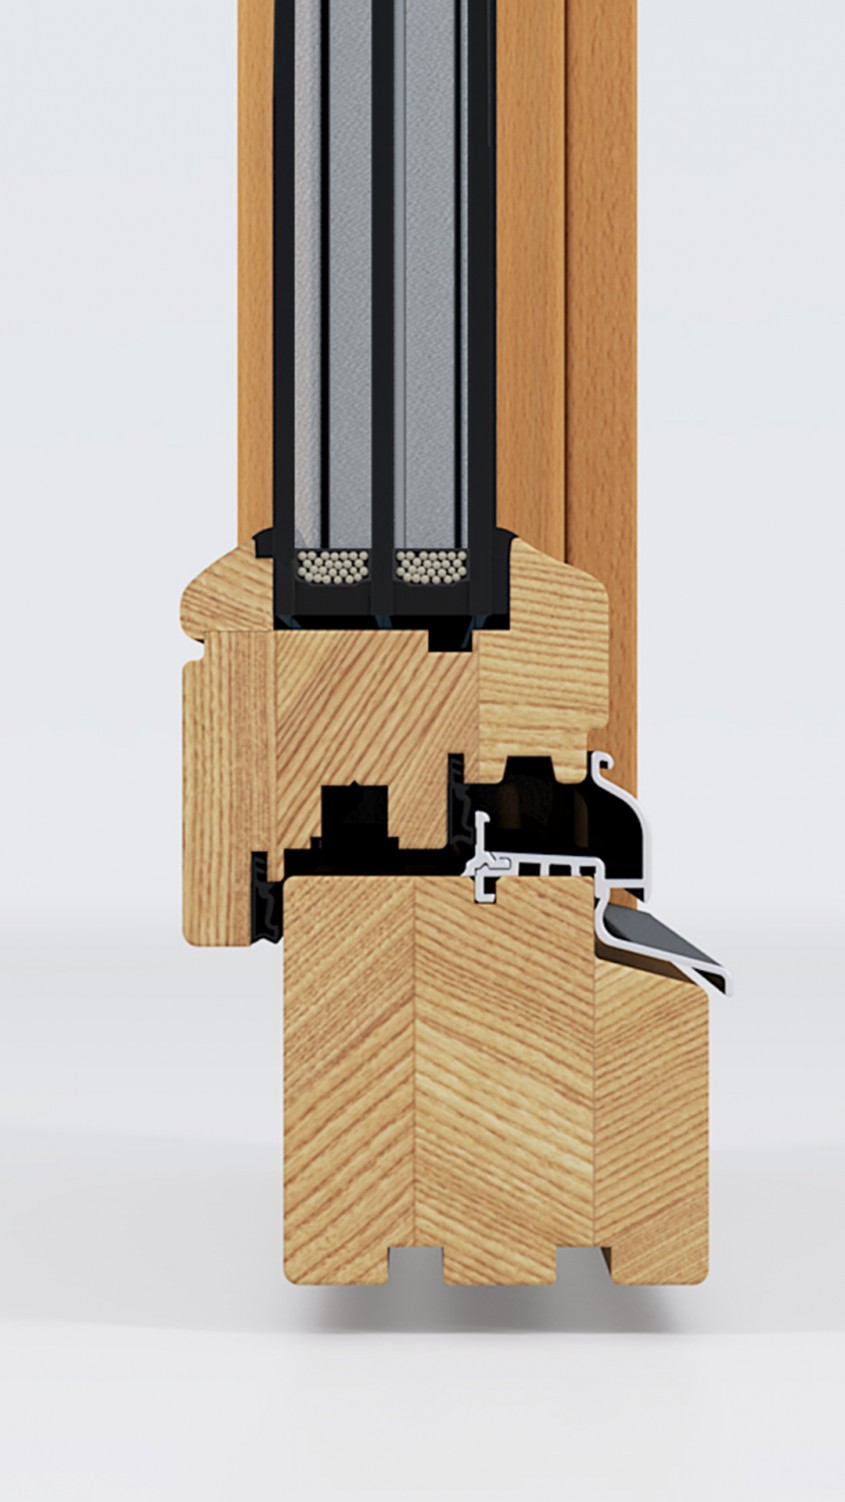 Profile din lemn stratificat pentru ferestre - Tamplaria din lemn stratificat, o alegere naturala si durabila